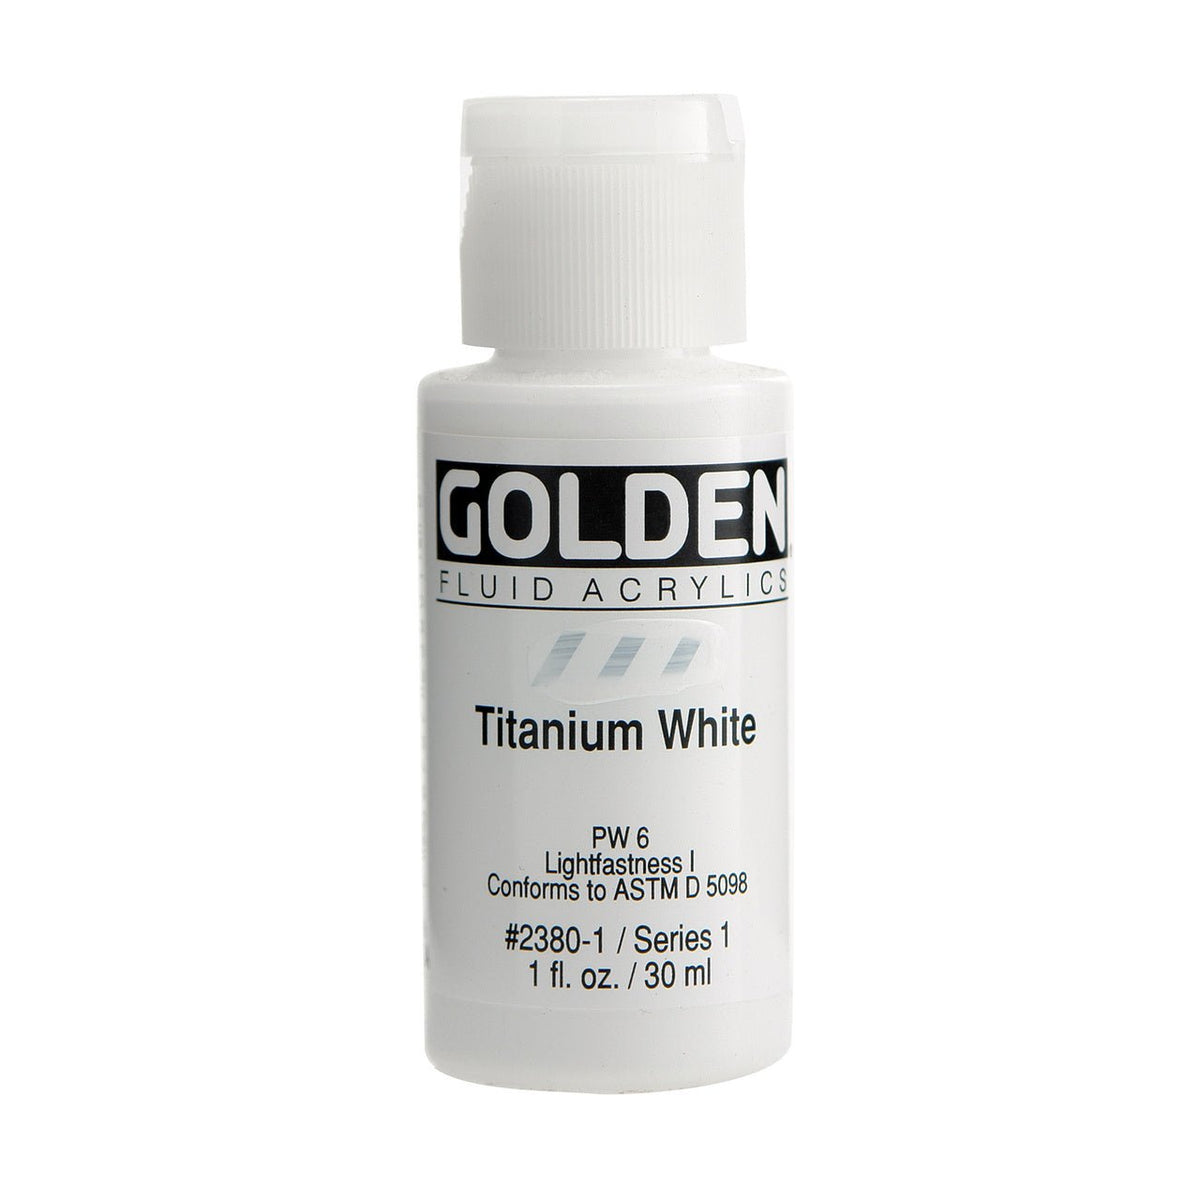 Golden Fluid Acrylic Titanium White 1 oz - merriartist.com